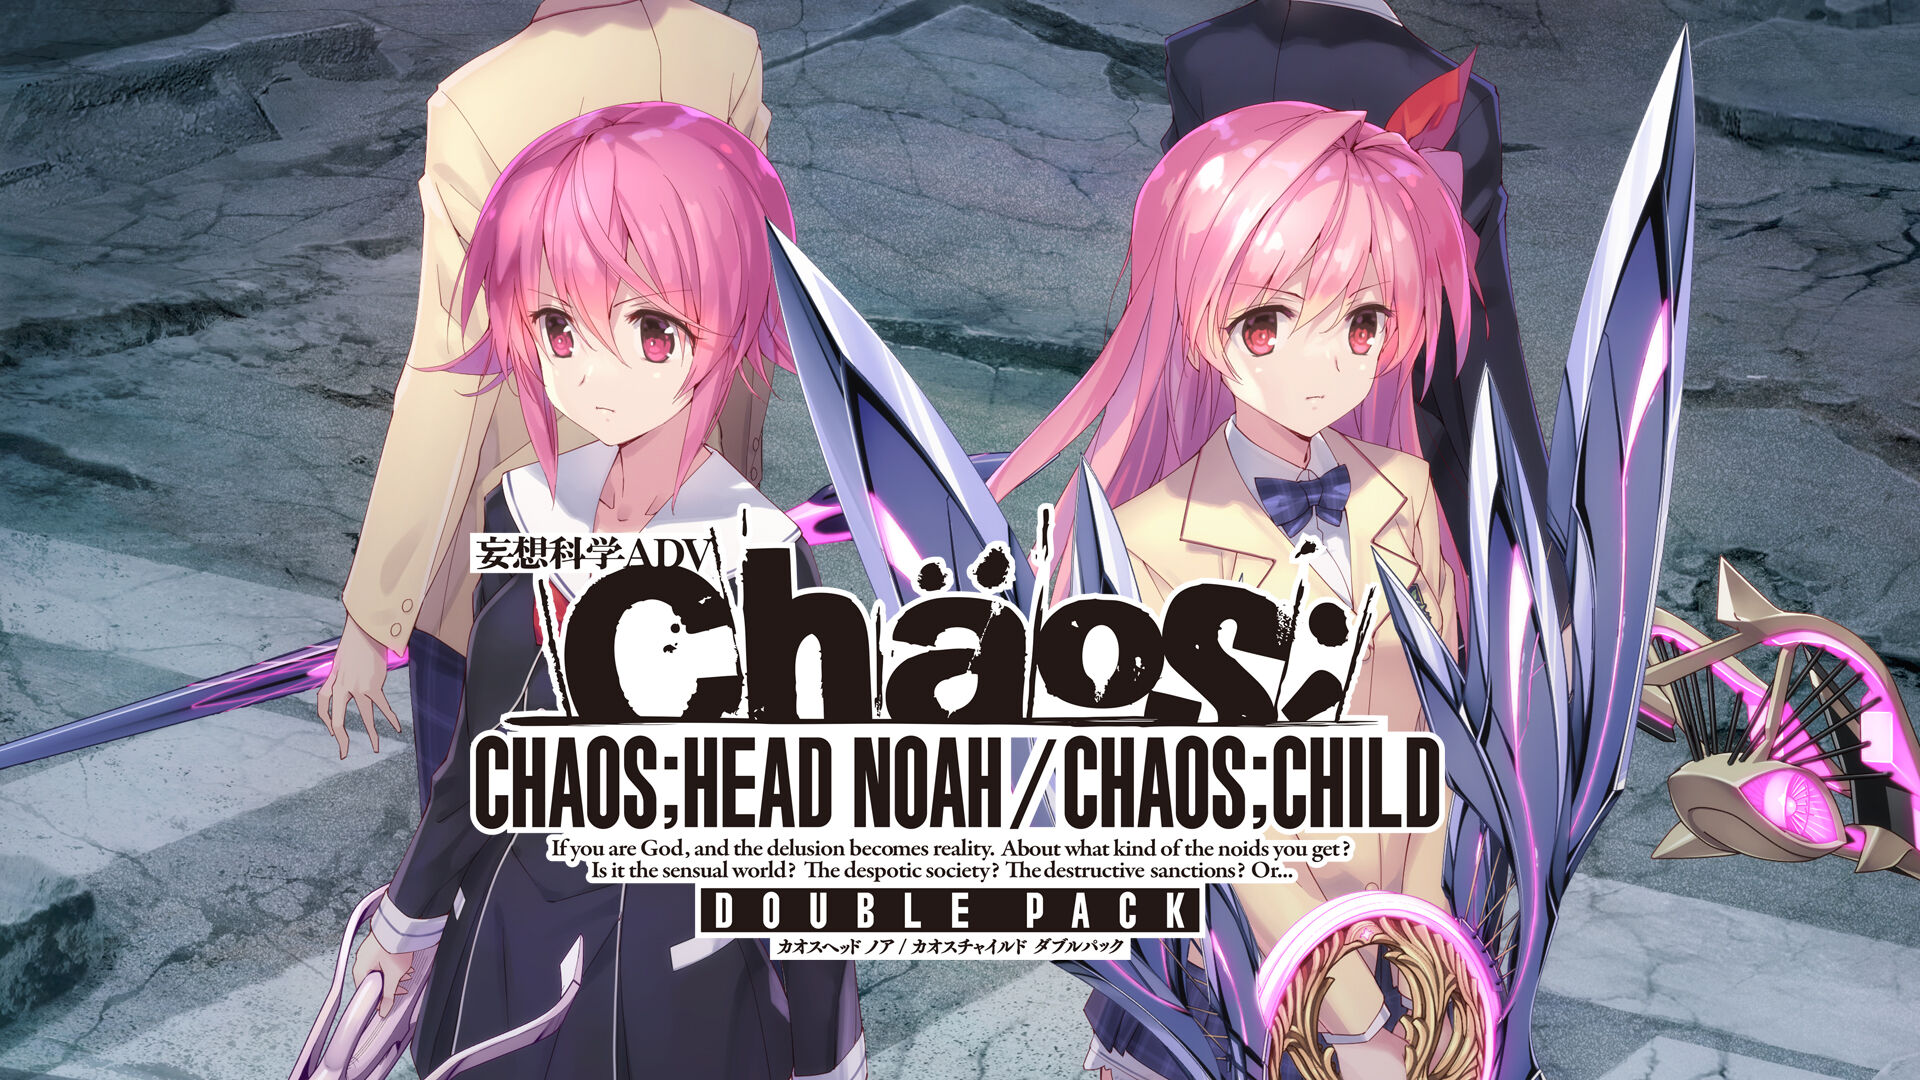 chaos%3Bhead